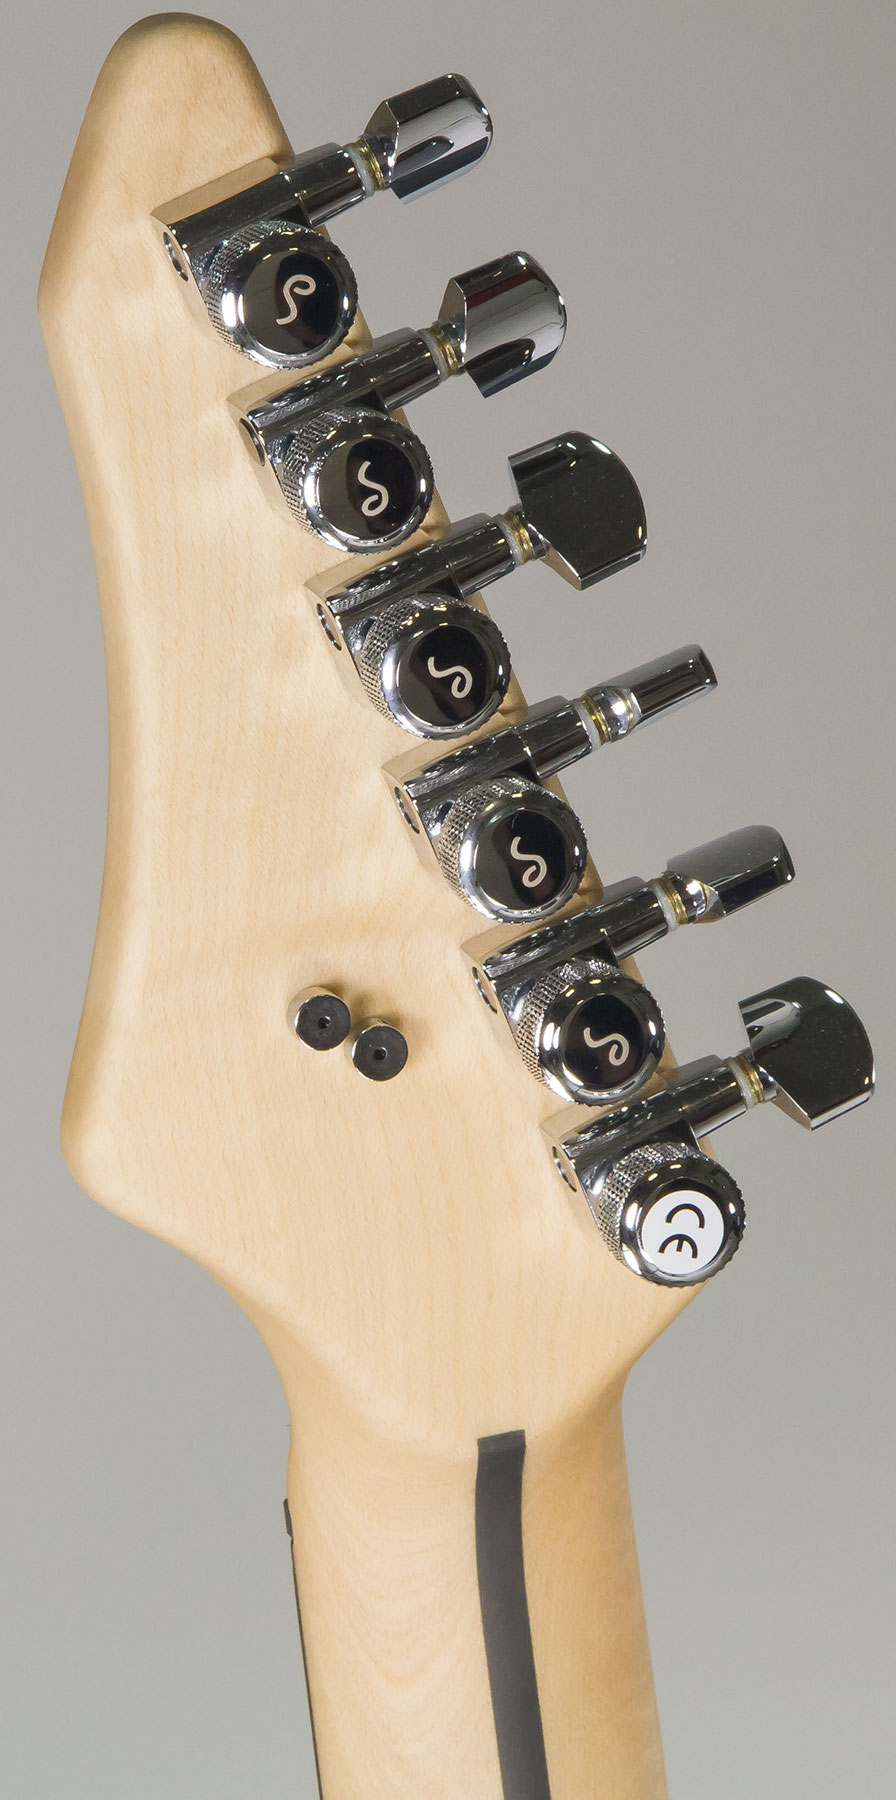 Vigier Excalibur Indus Hh Trem Rw - Textured Black - Guitarra eléctrica de doble corte. - Variation 5